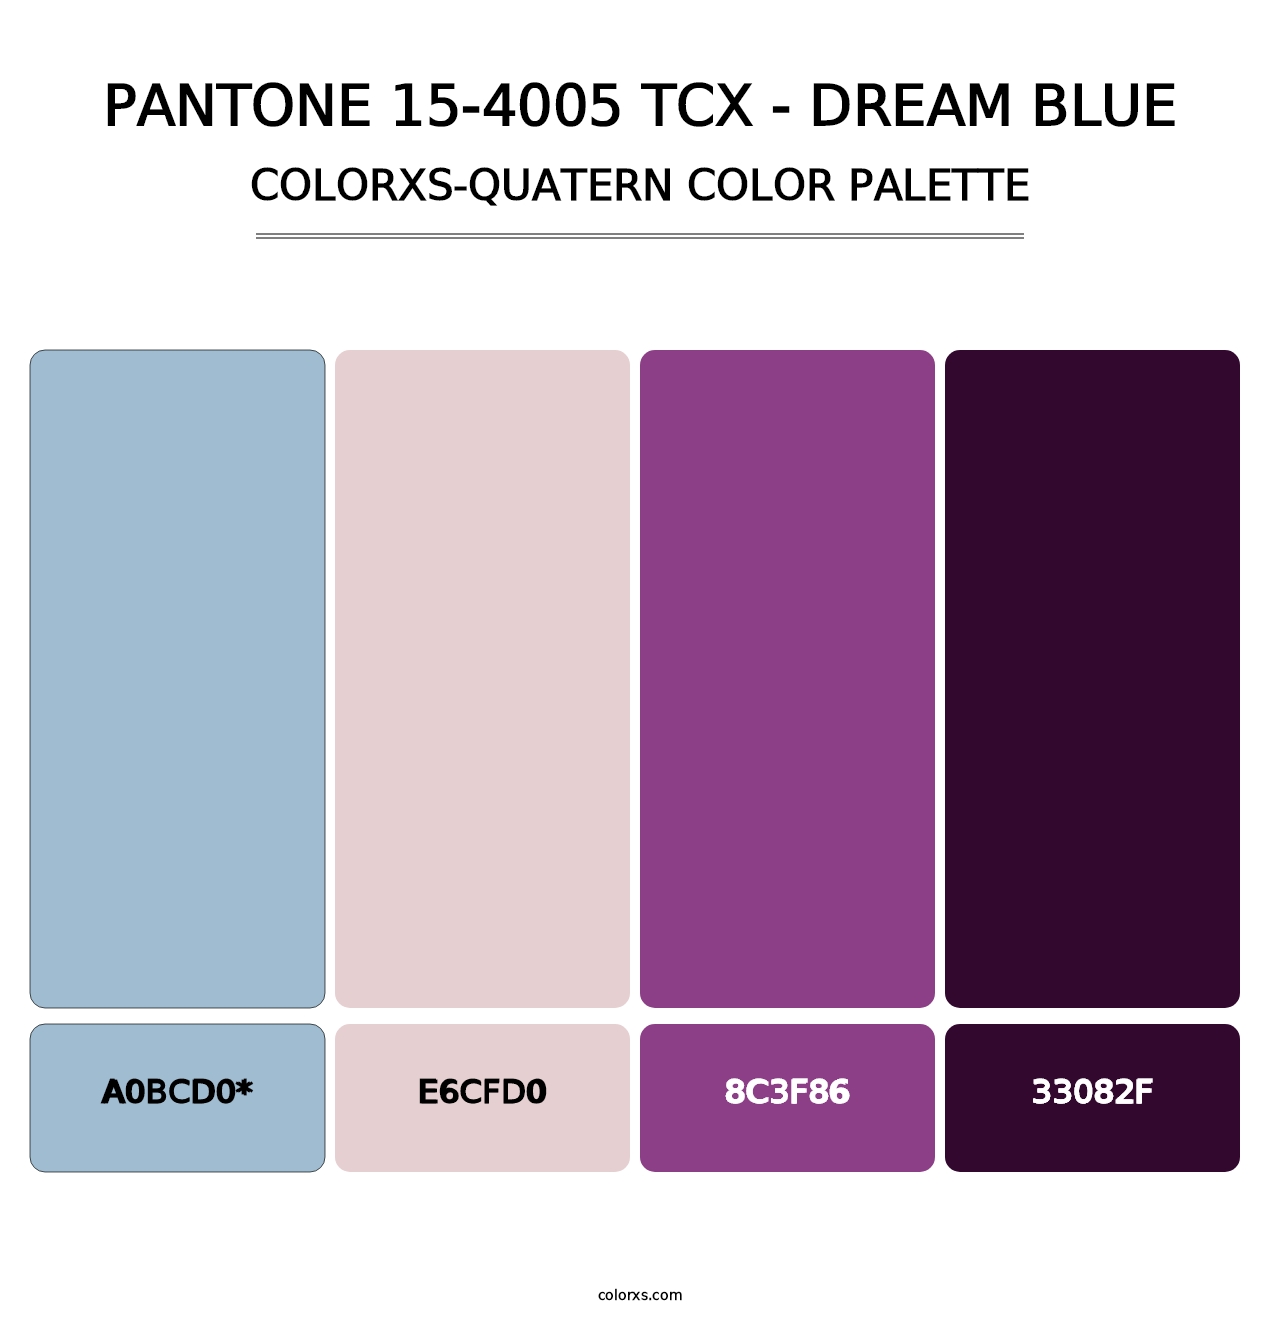 PANTONE 15-4005 TCX - Dream Blue - Colorxs Quatern Palette